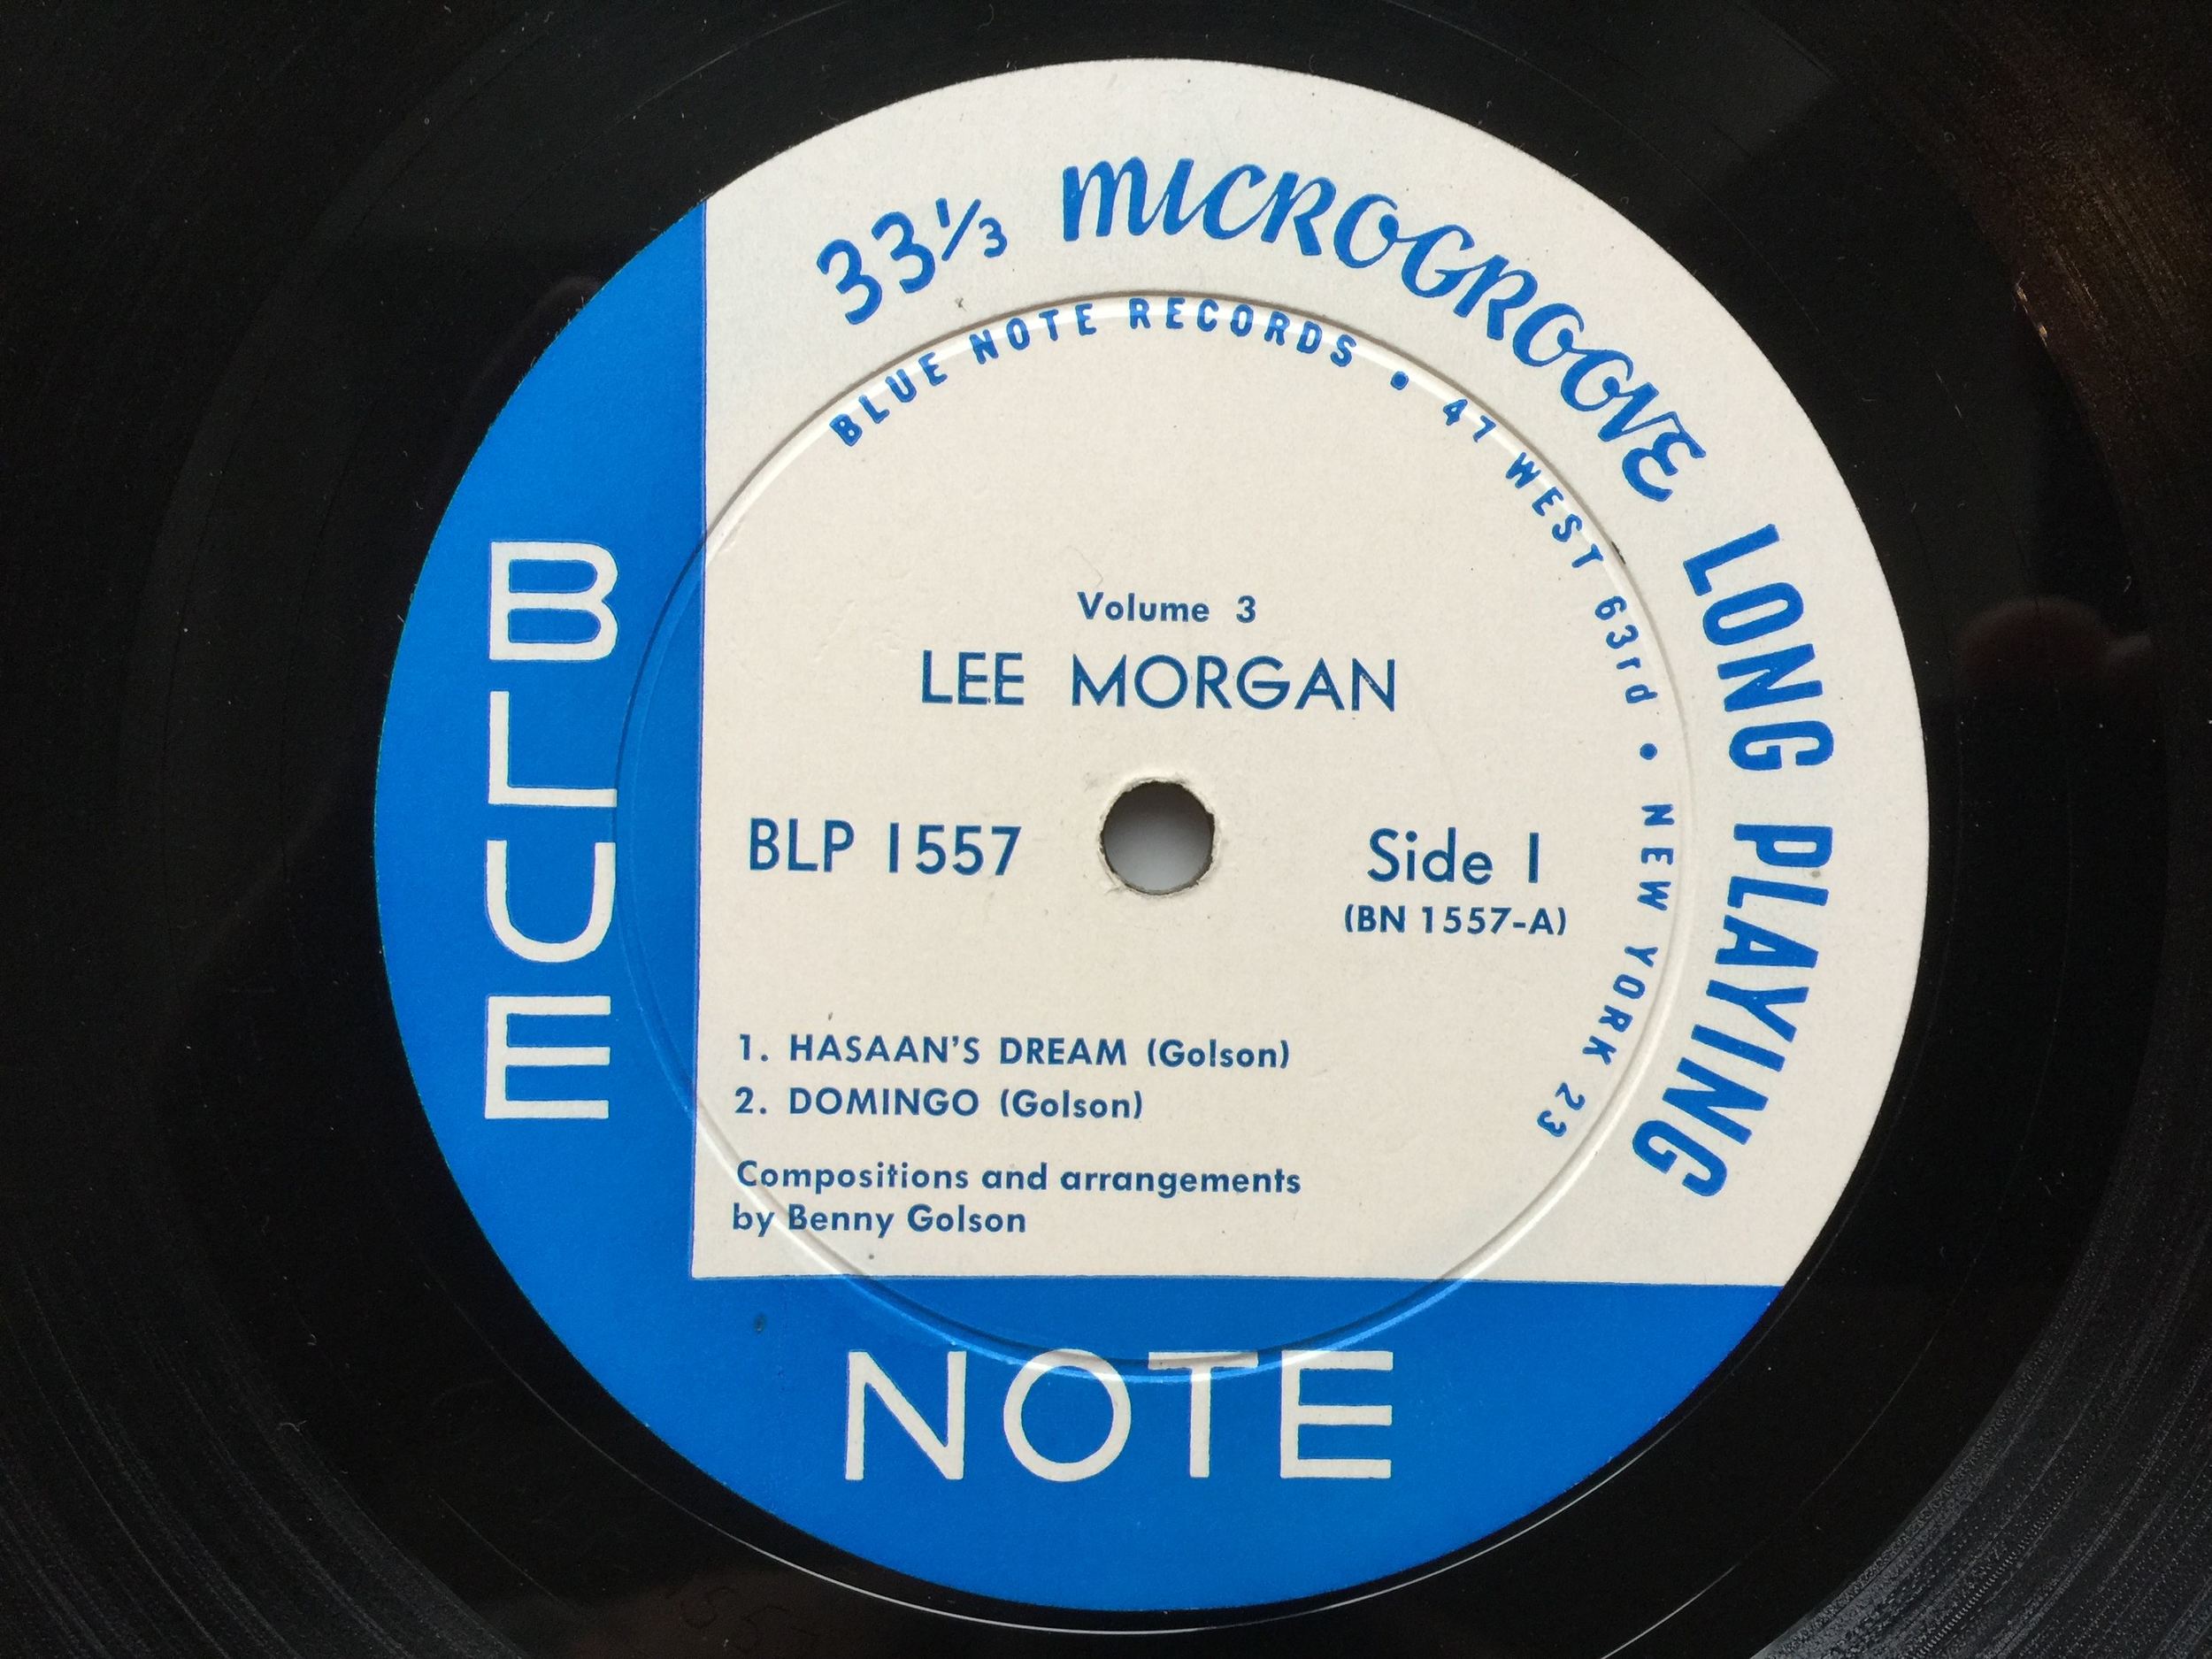 Lee Morgan Vol. 3 on Blue Note 1557 — FW Rare Jazz Vinyl Collector